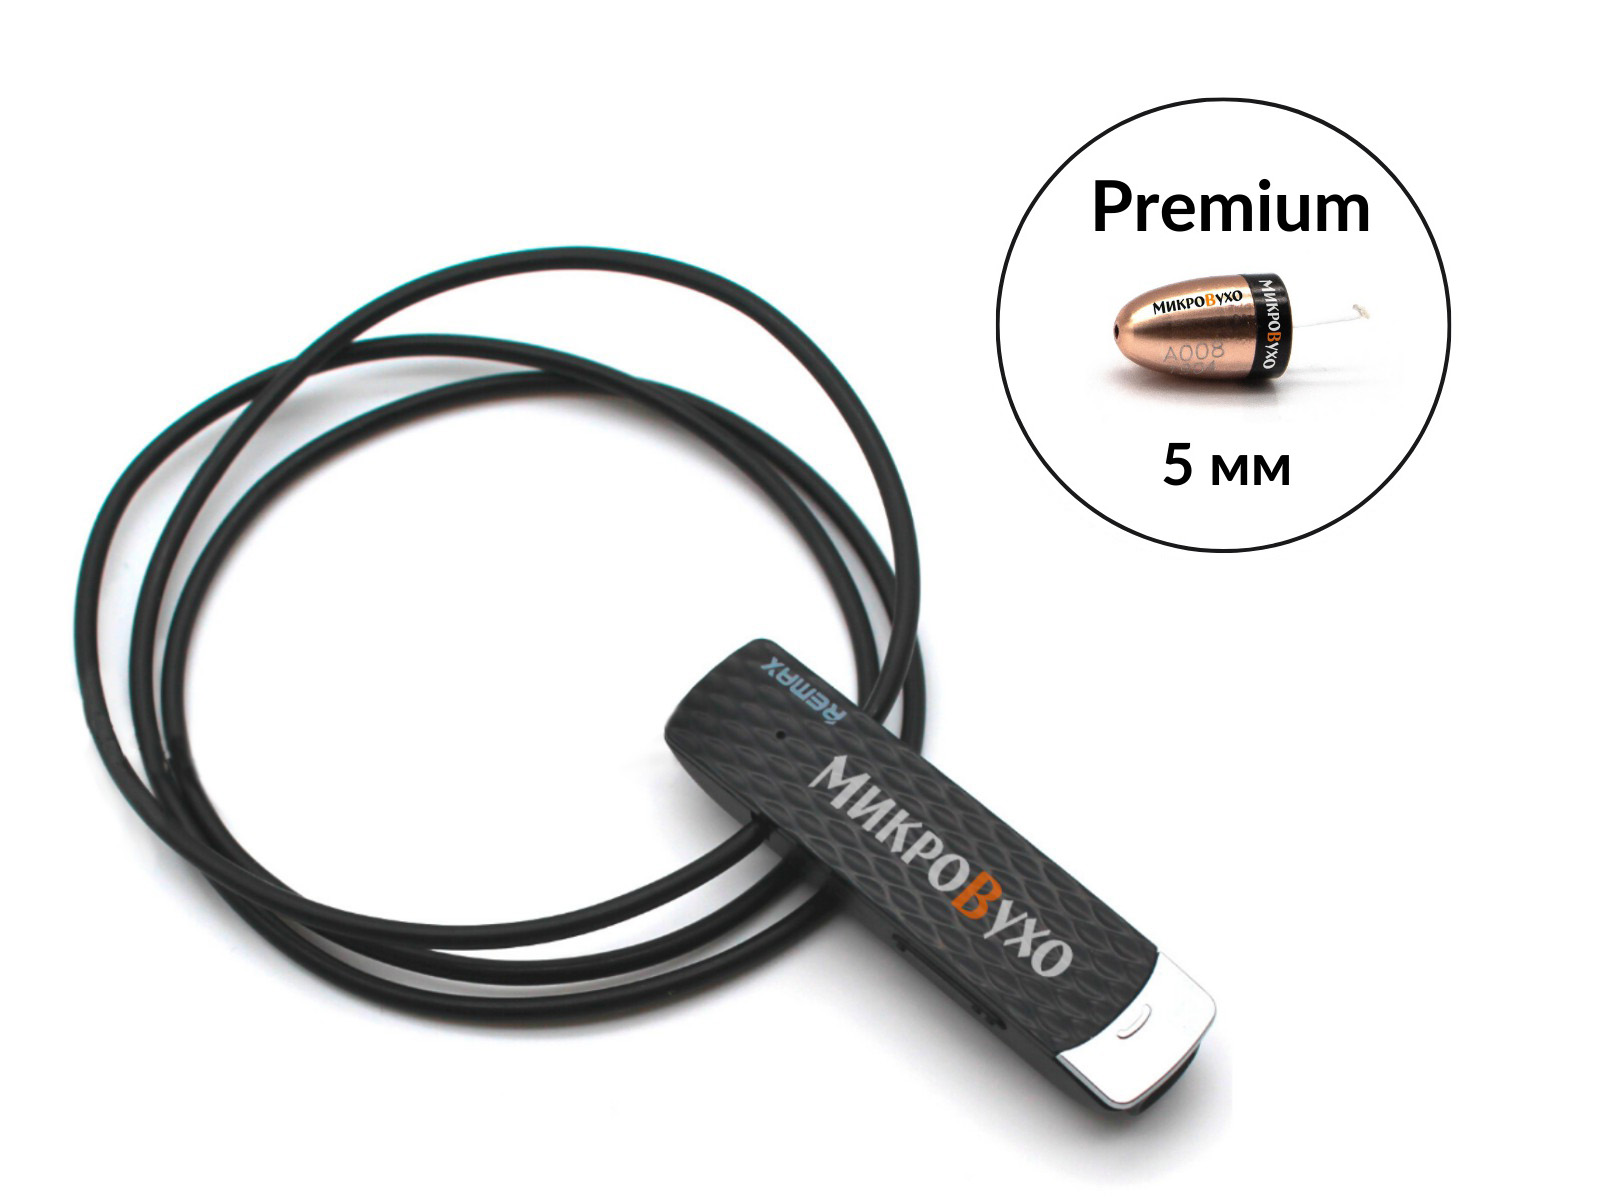 Гарнитура Bluetooth Remax с капсульным микронаушником Premium - изображение 13